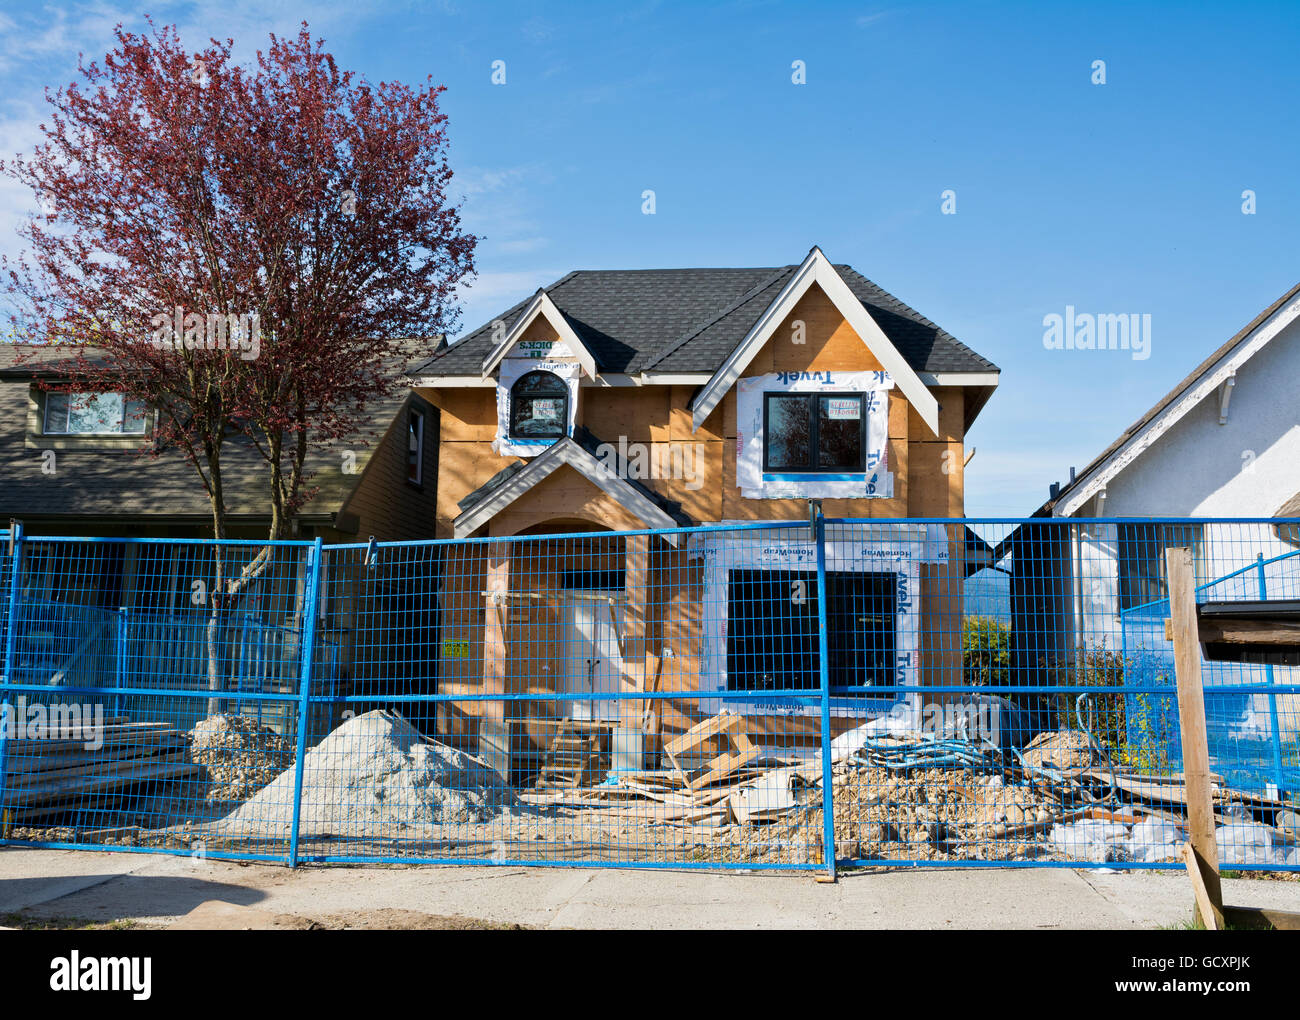 Neues Haus im Bau in Vancouver, BC, Kanada. Neues Haus, gebaut nach vorherige abgerissen wurde. Stockfoto